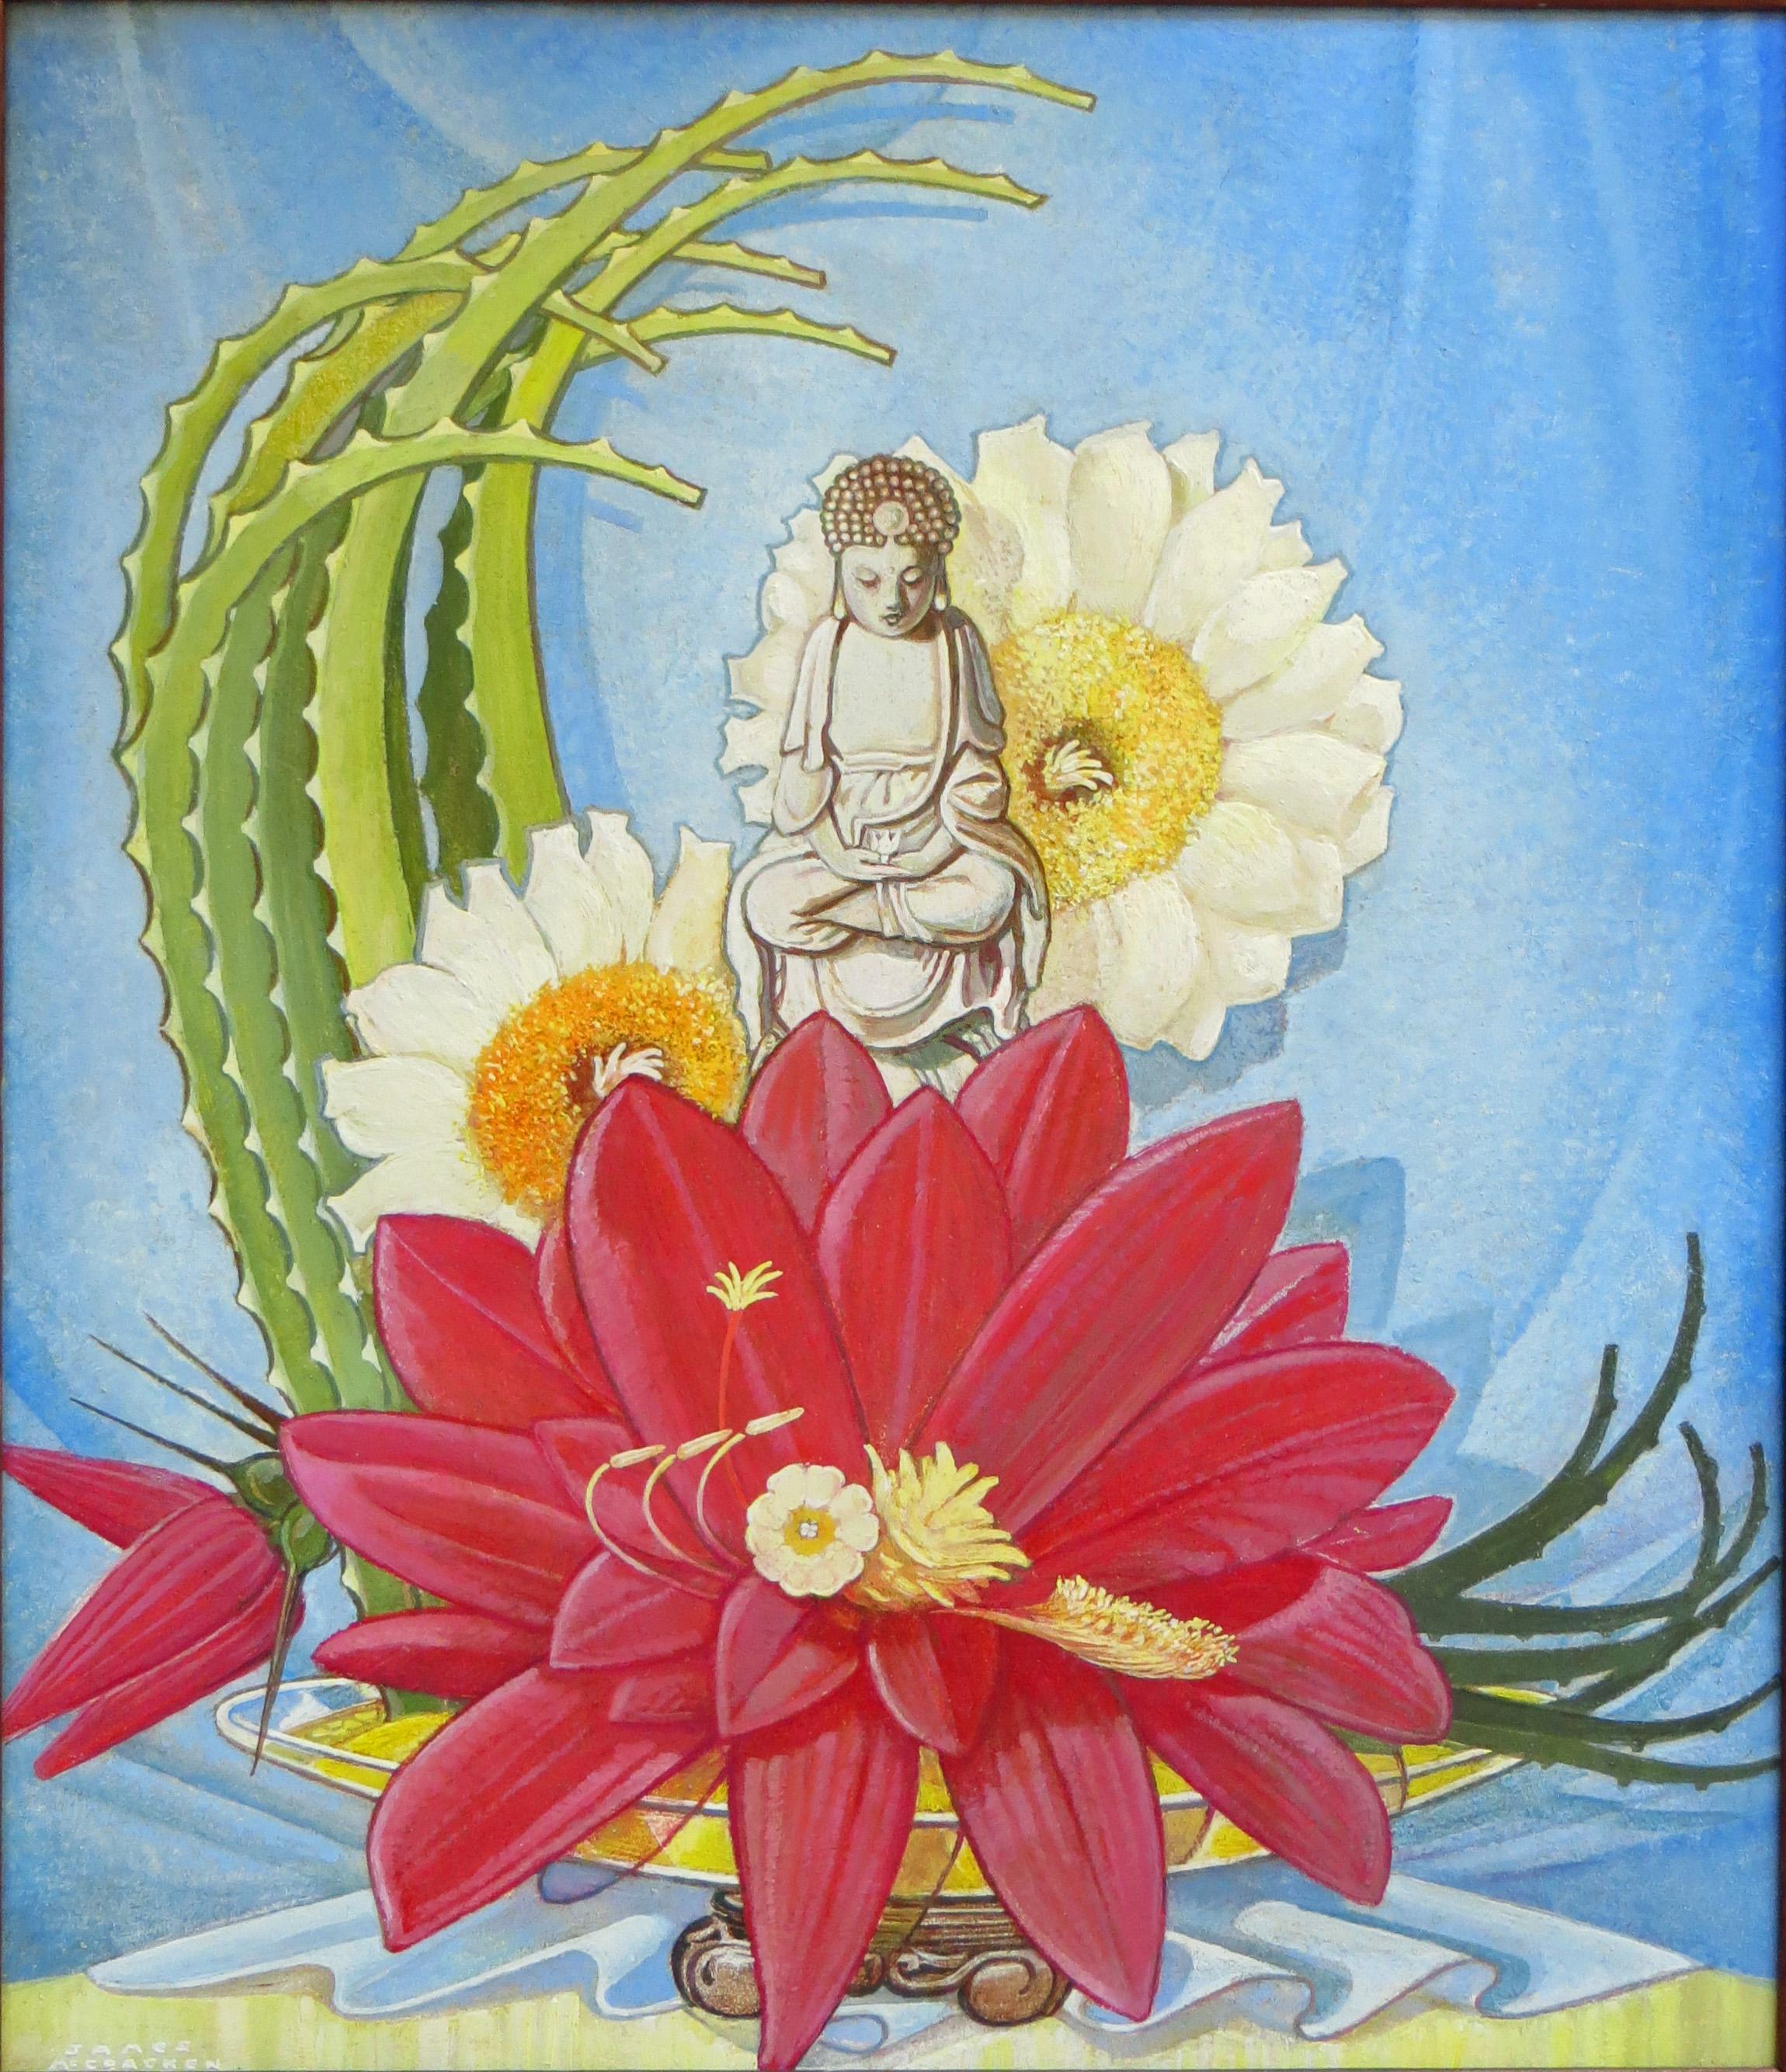 Dieses Öl auf Karton ist ein Werk von James McCracken (1875-1967). Es ist eine üppige, exotische Komposition, die eine Buddha-Statue auf einer Lotusblüte zeigt. Im Hintergrund befinden sich weitere Blumen sowie eine Art Aloe oder eine andere